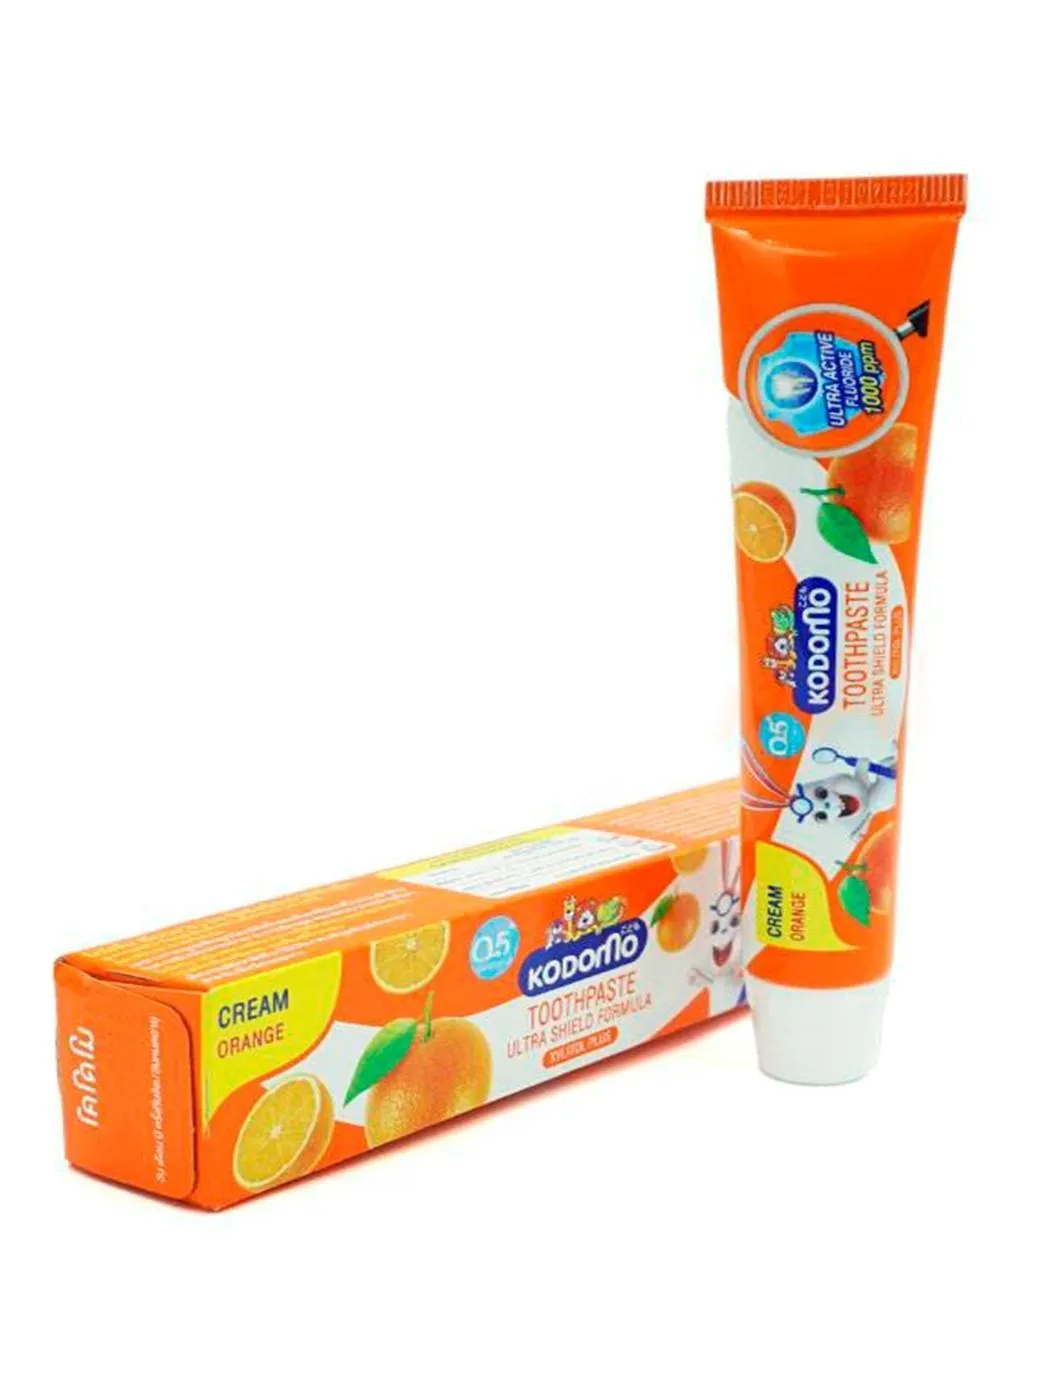 Lion Kodomo Деткая зубная паста от 6 месяцев Апельсин 40 гр